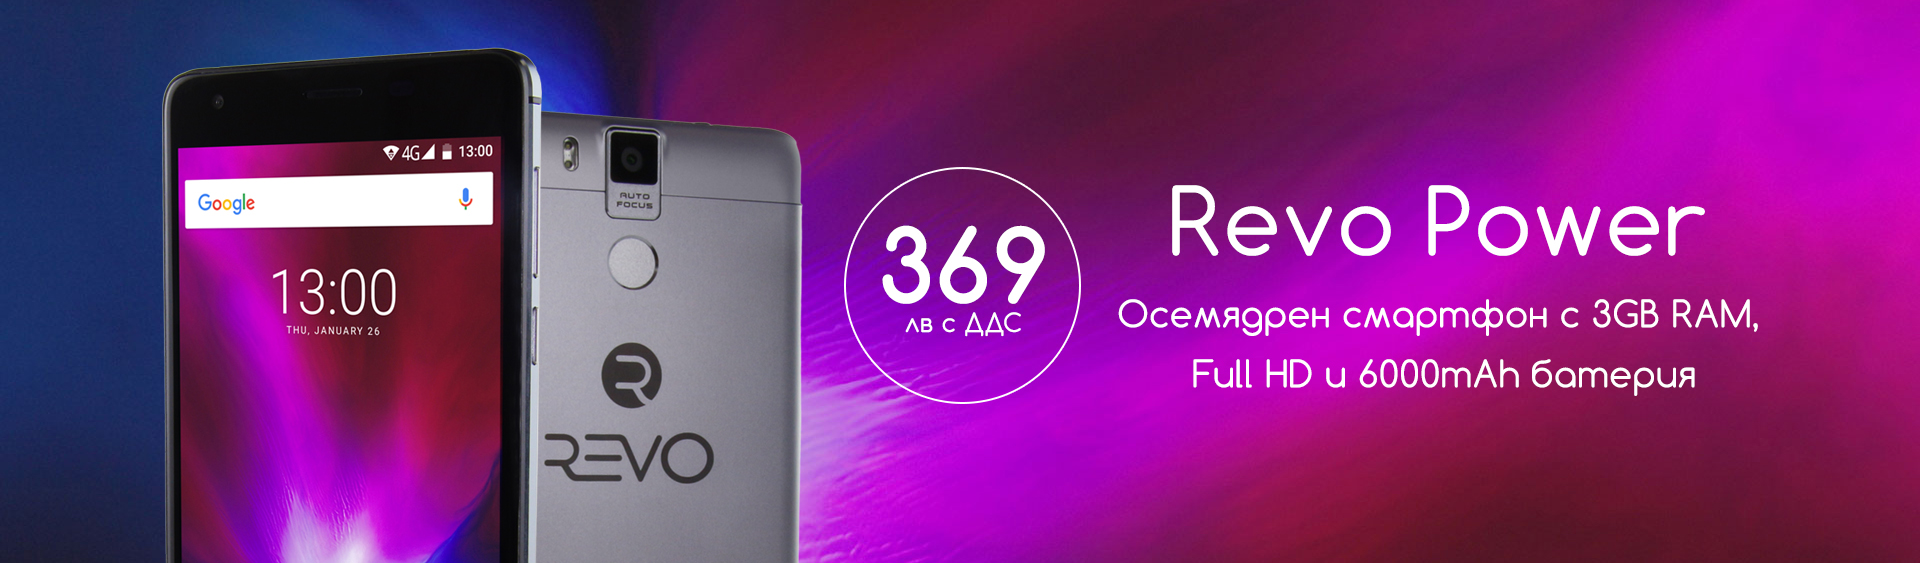 Revo Power 4G Осемядрен смартфон с 3GB RAM, Full HD и голяма батерия